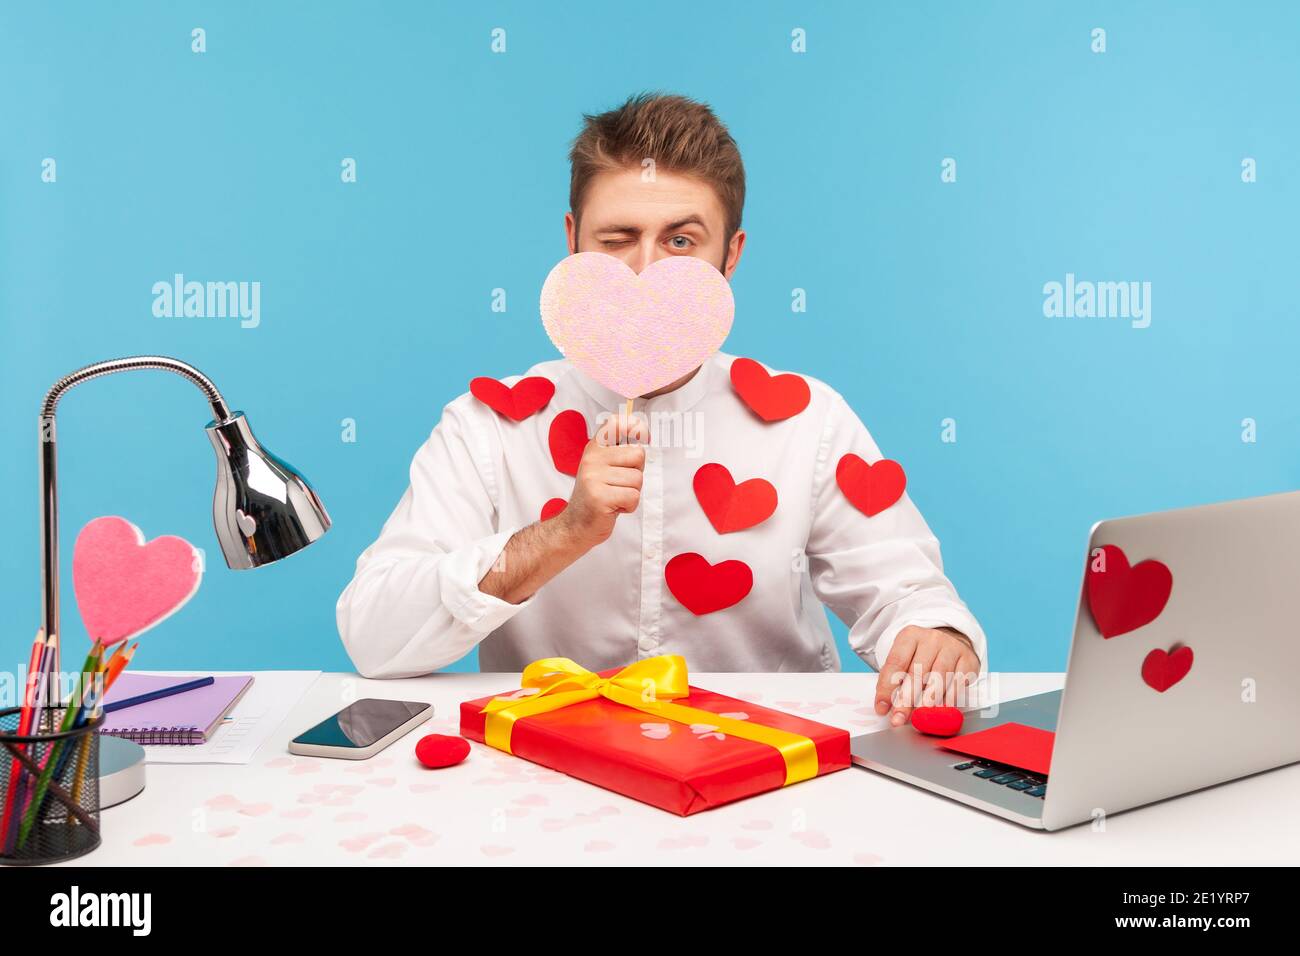 Uomo lavoratore d'ufficio innamorato dei cuori sulla camicia nascondendo il viso dietro cuore rosa e l'inzidatura, la preparazione del regalo per giorno di valentine, celebrazione, romanticismo. IND Foto Stock